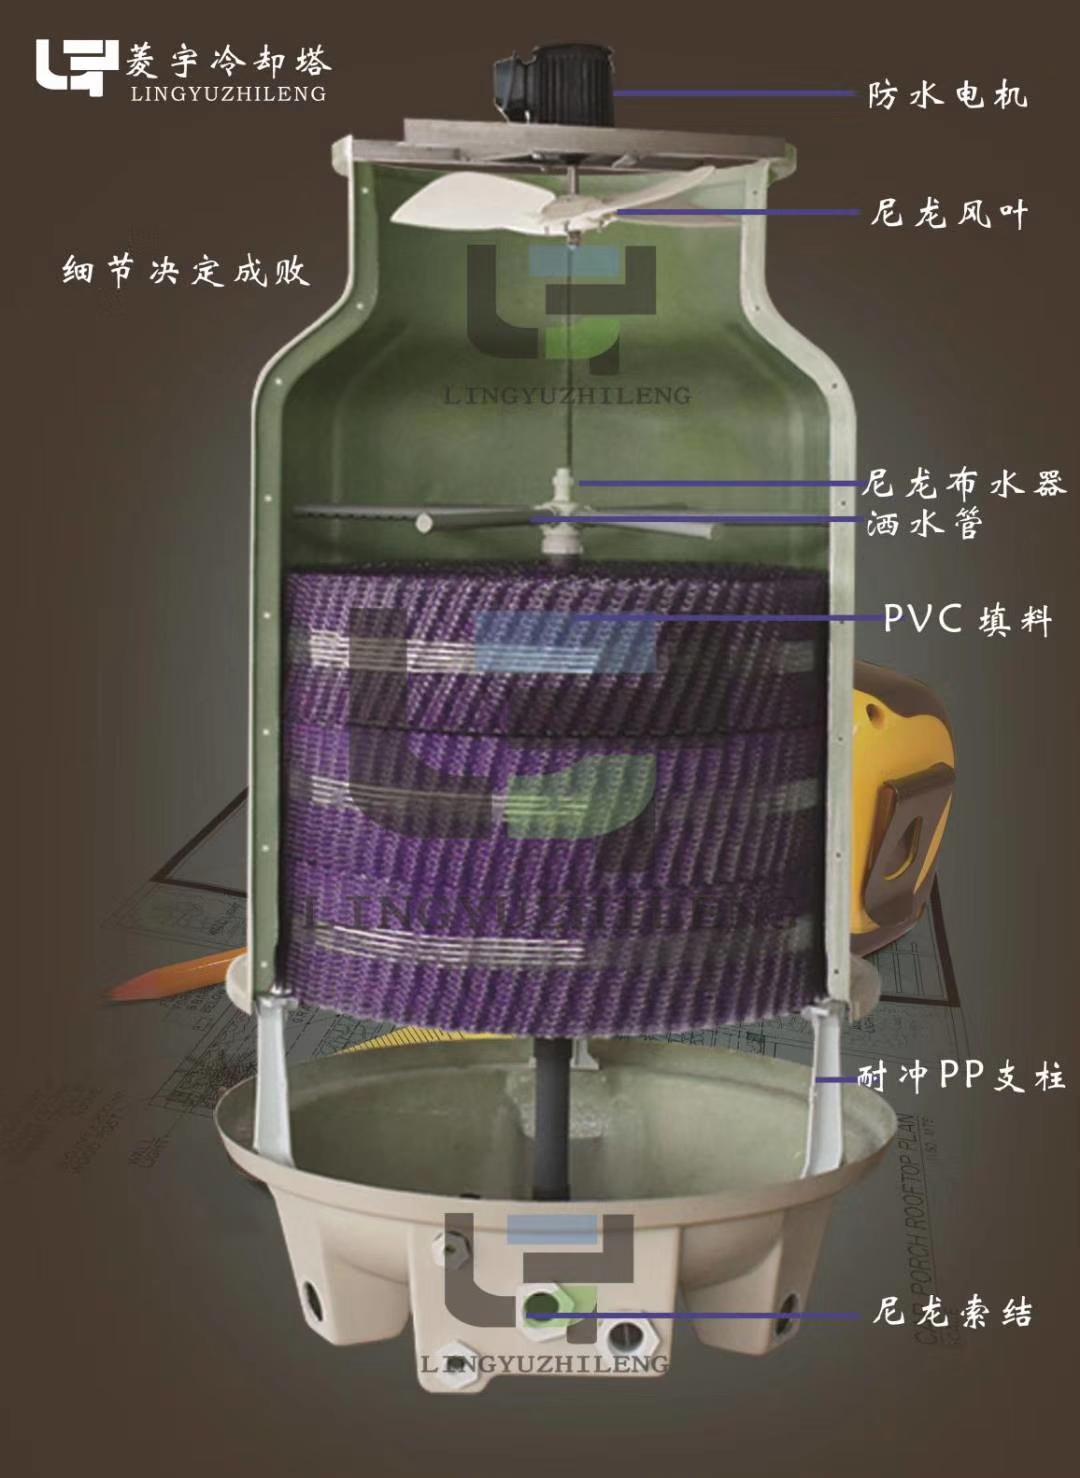 郑州菱宇全系LY--H高端圆形逆流式冷却塔